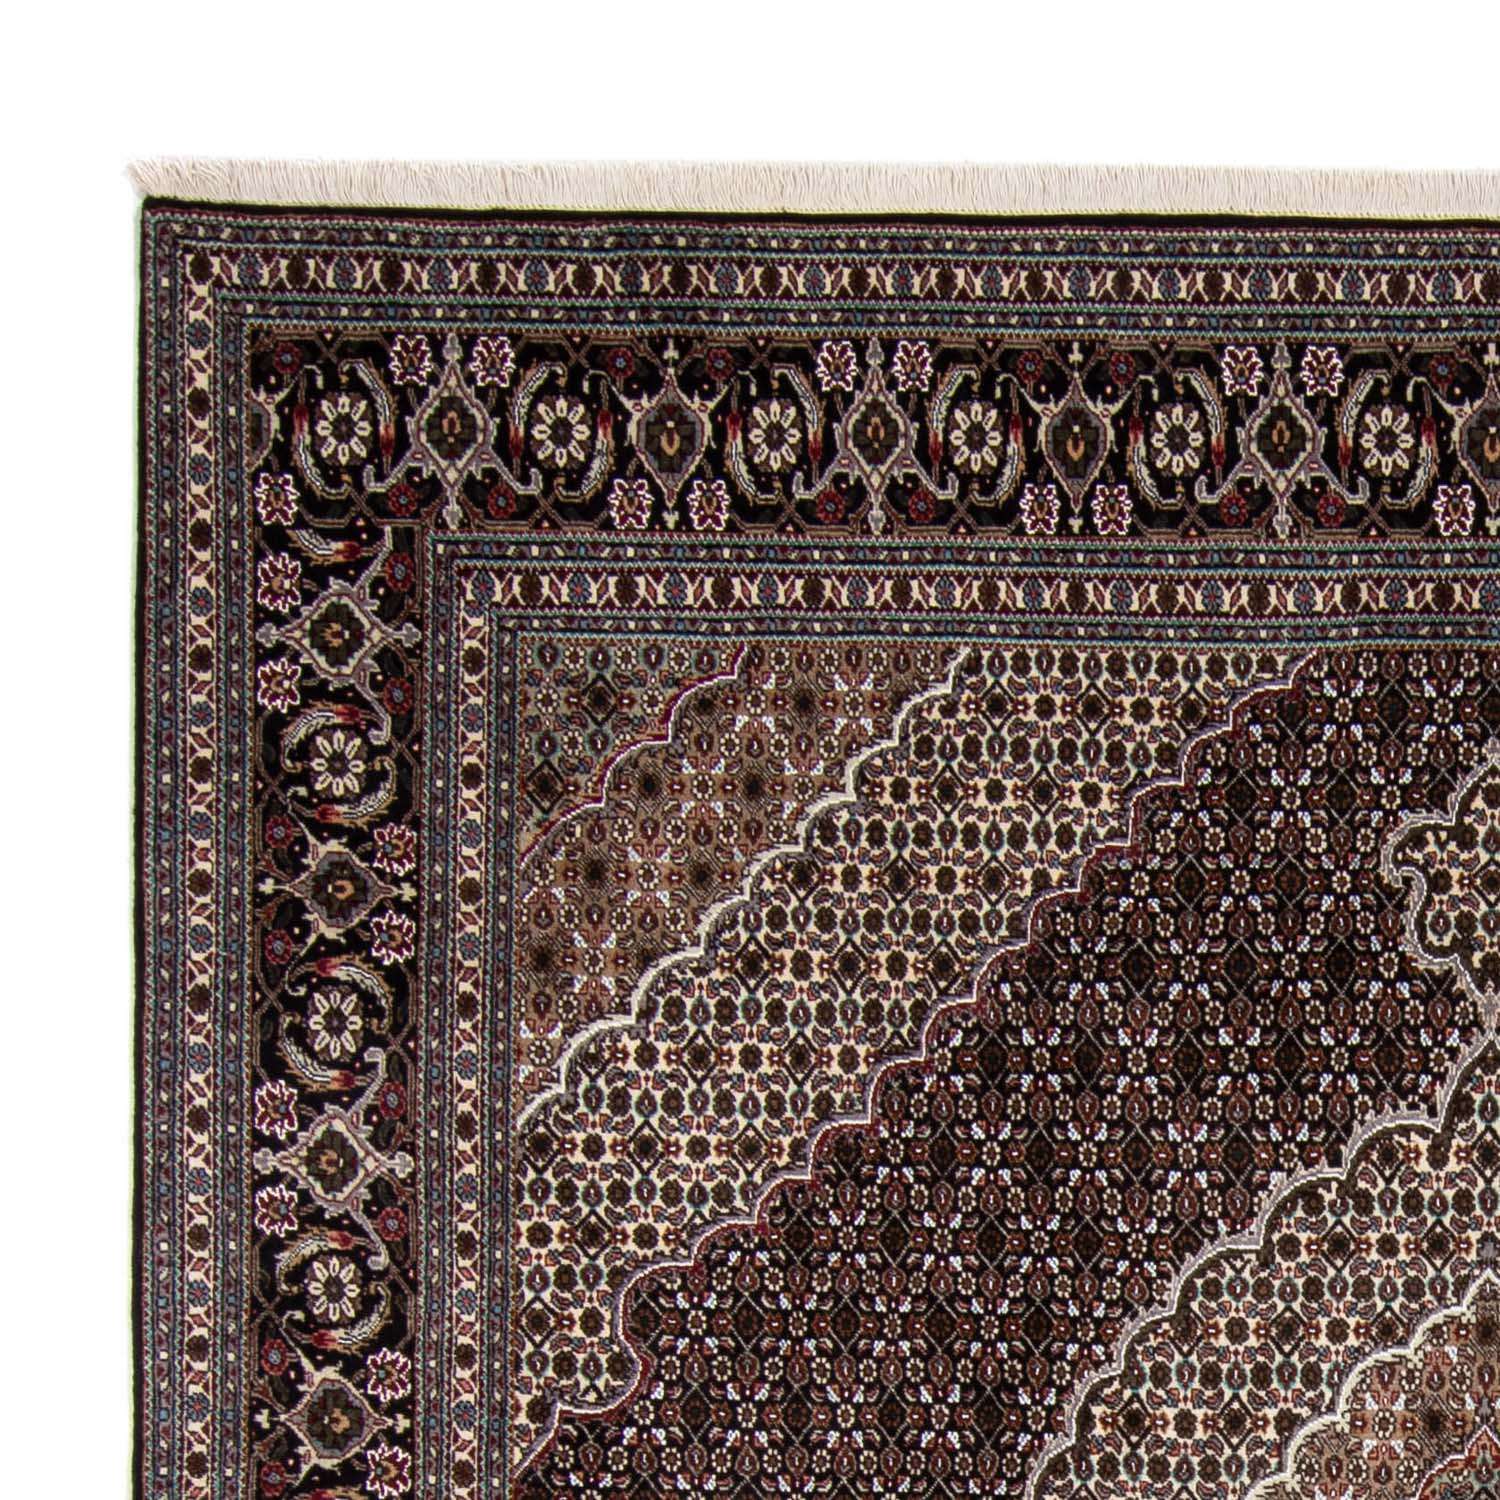 Dywan perski - Tabriz - Królewski kwadratowy  - 251 x 249 cm - ciemnoniebieski